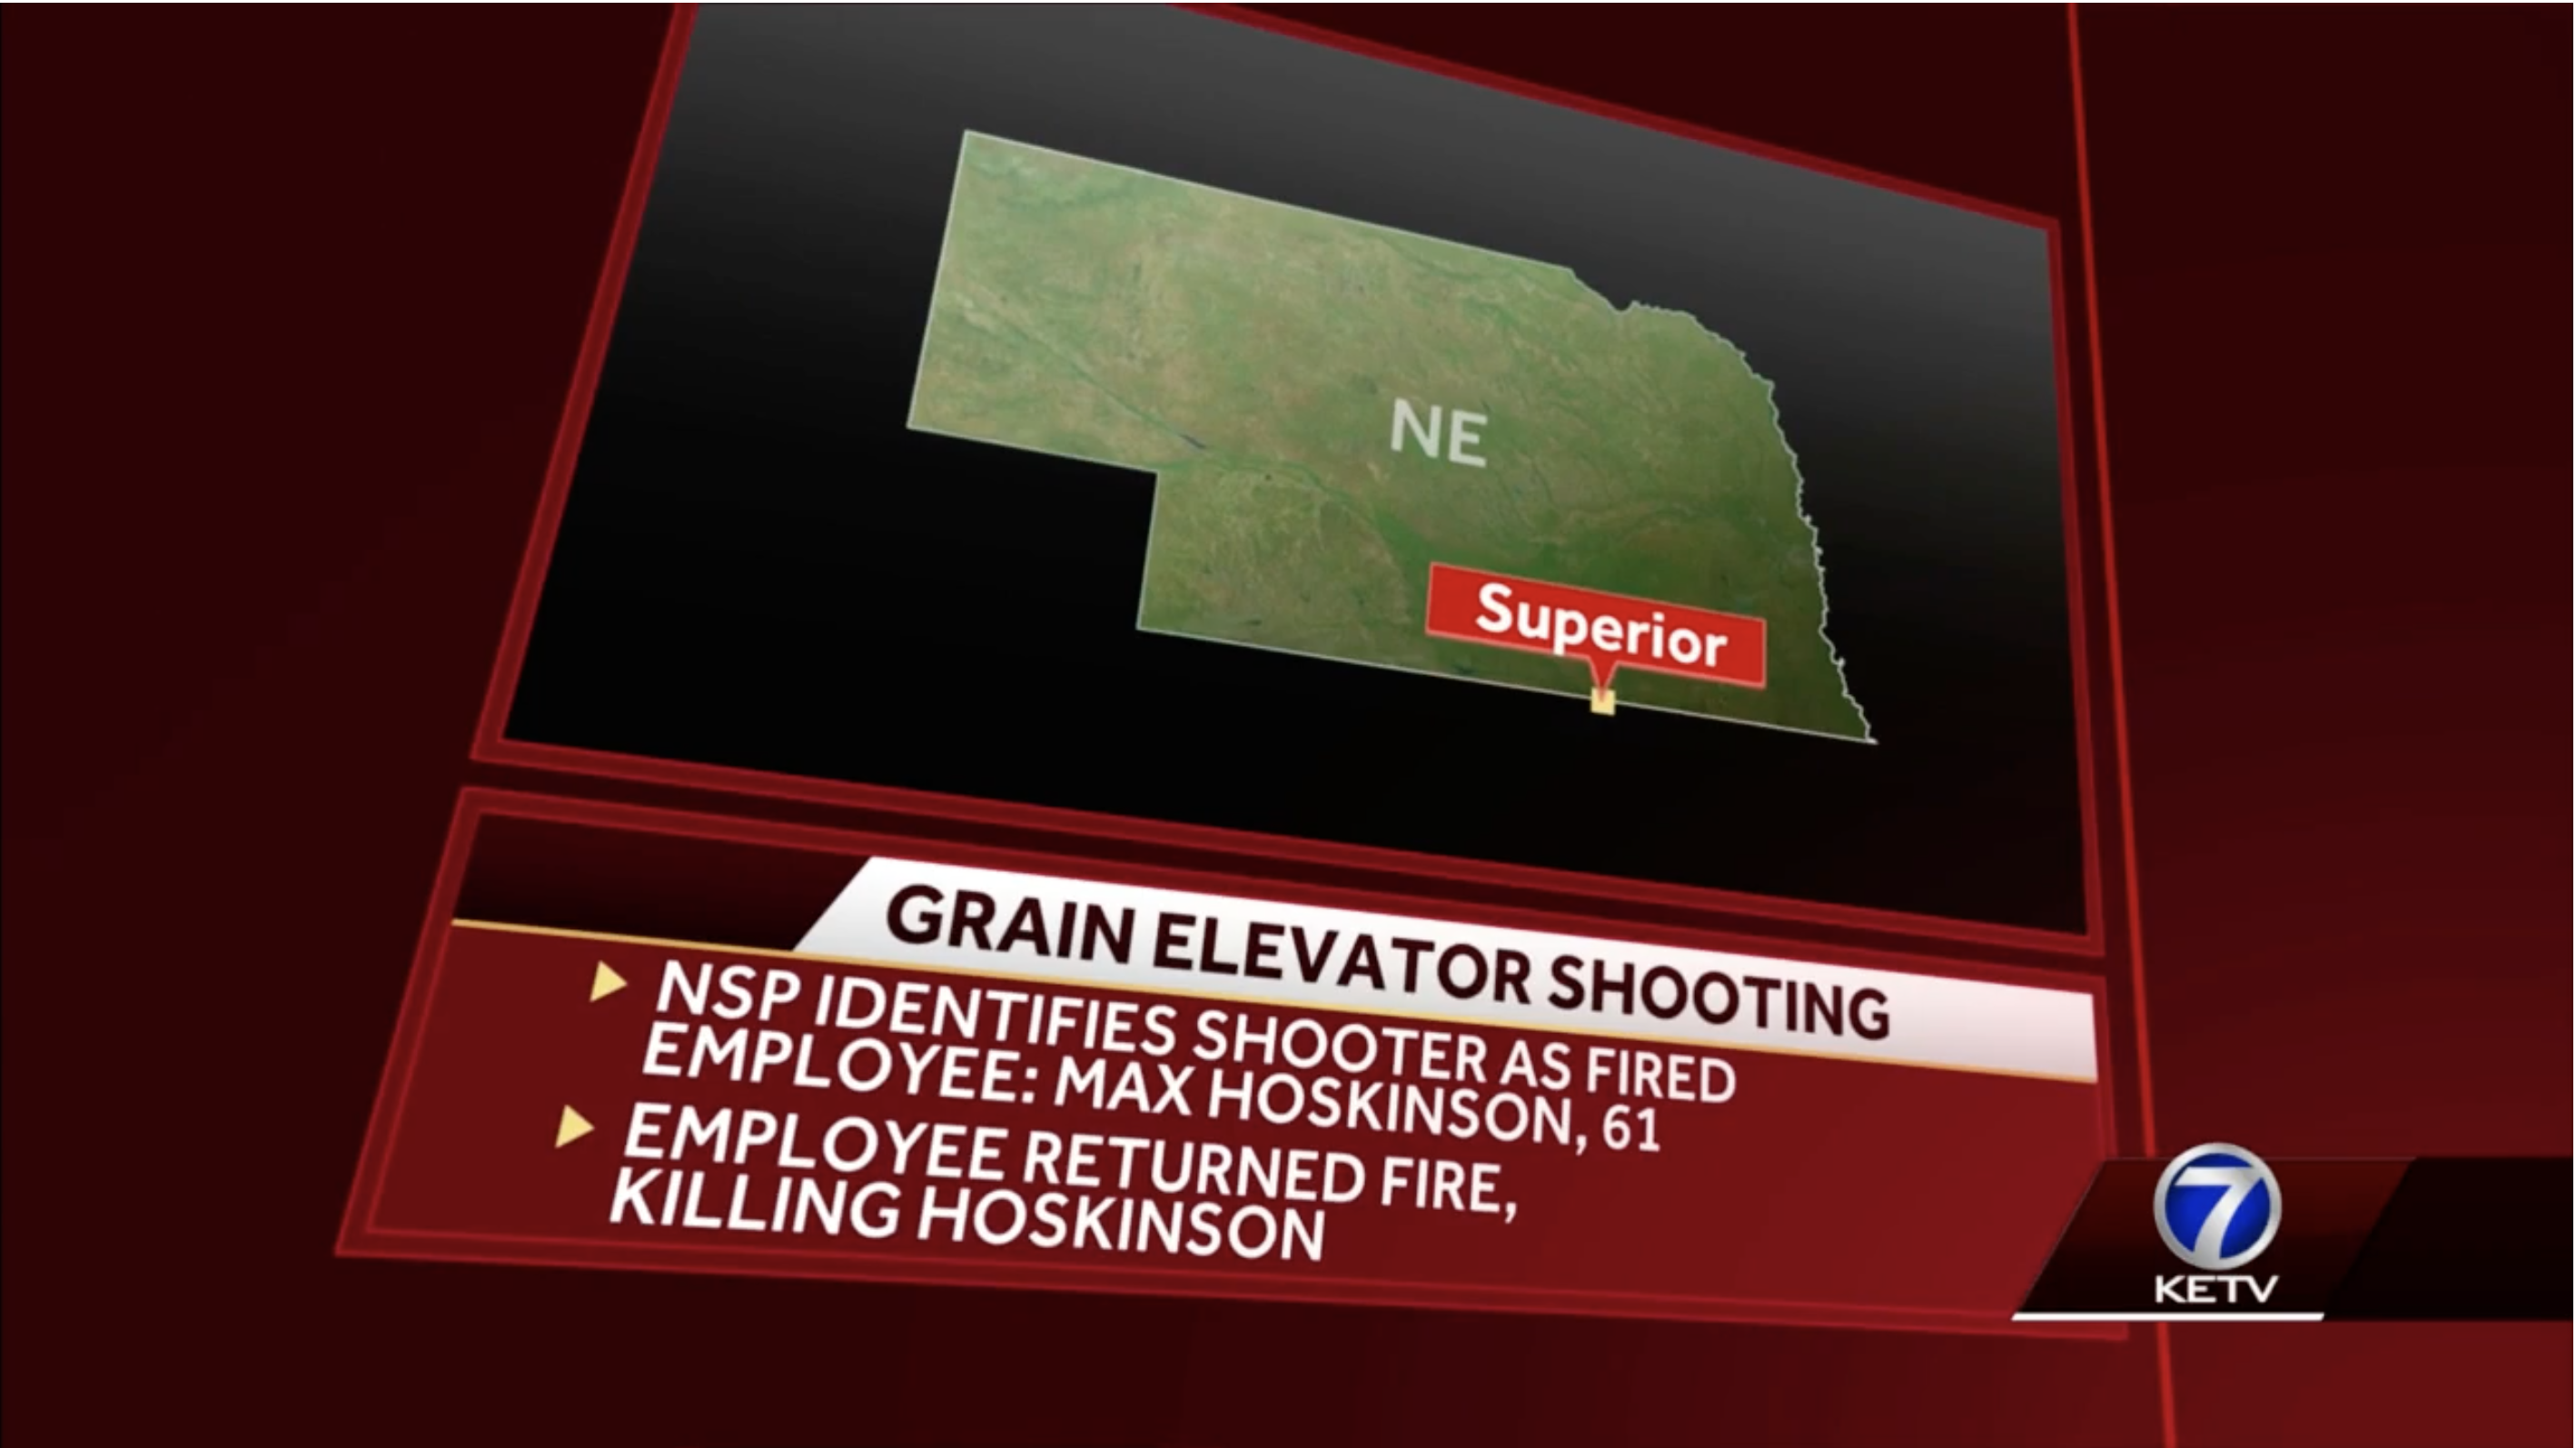 Grain complex worker stops active shooter using shotgun